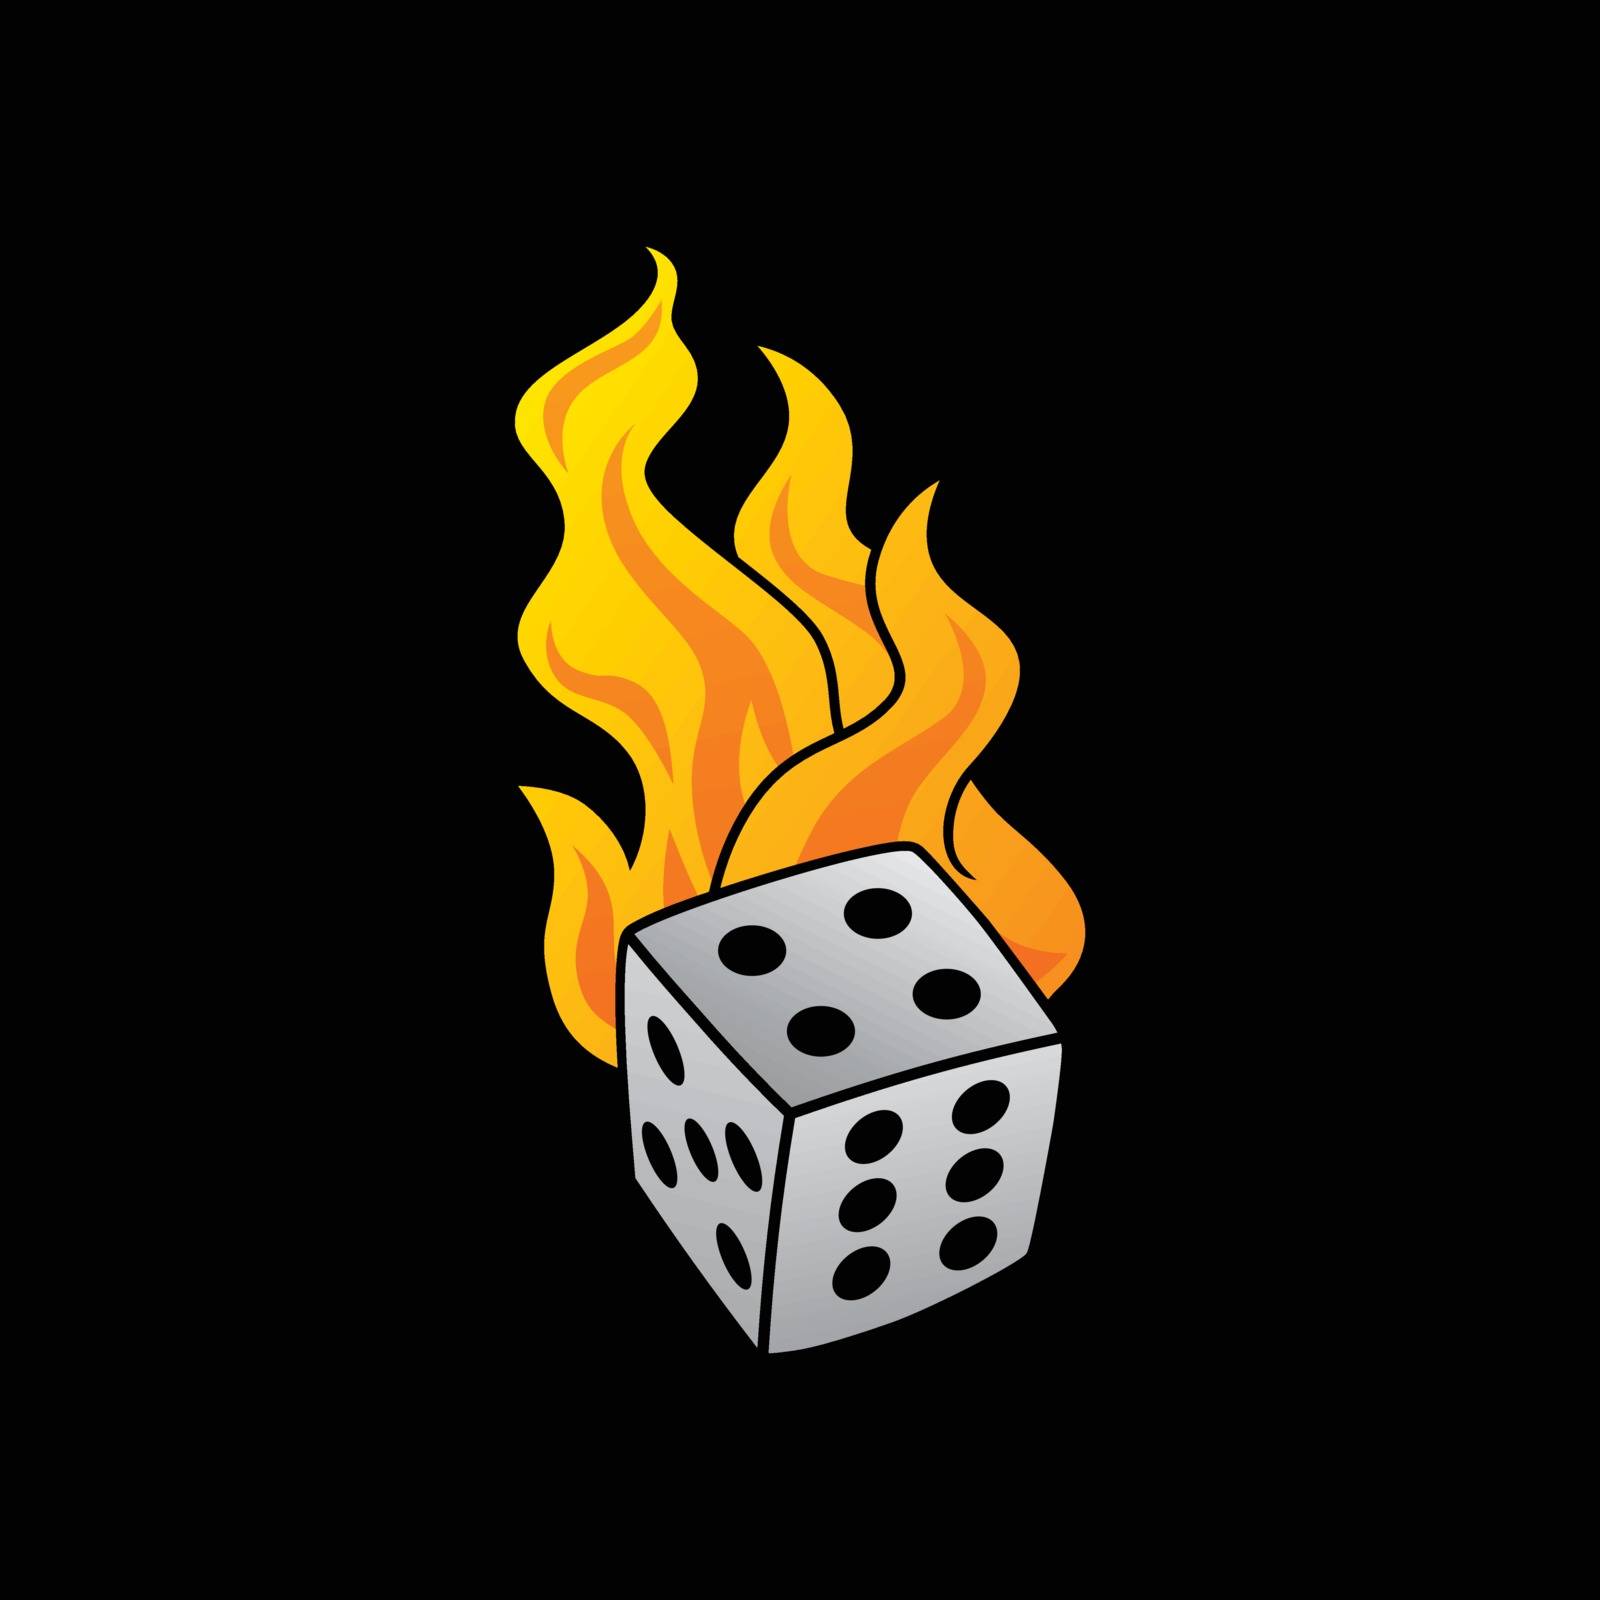 flaming on fire burning white dice risk taker gamble vector art illustration